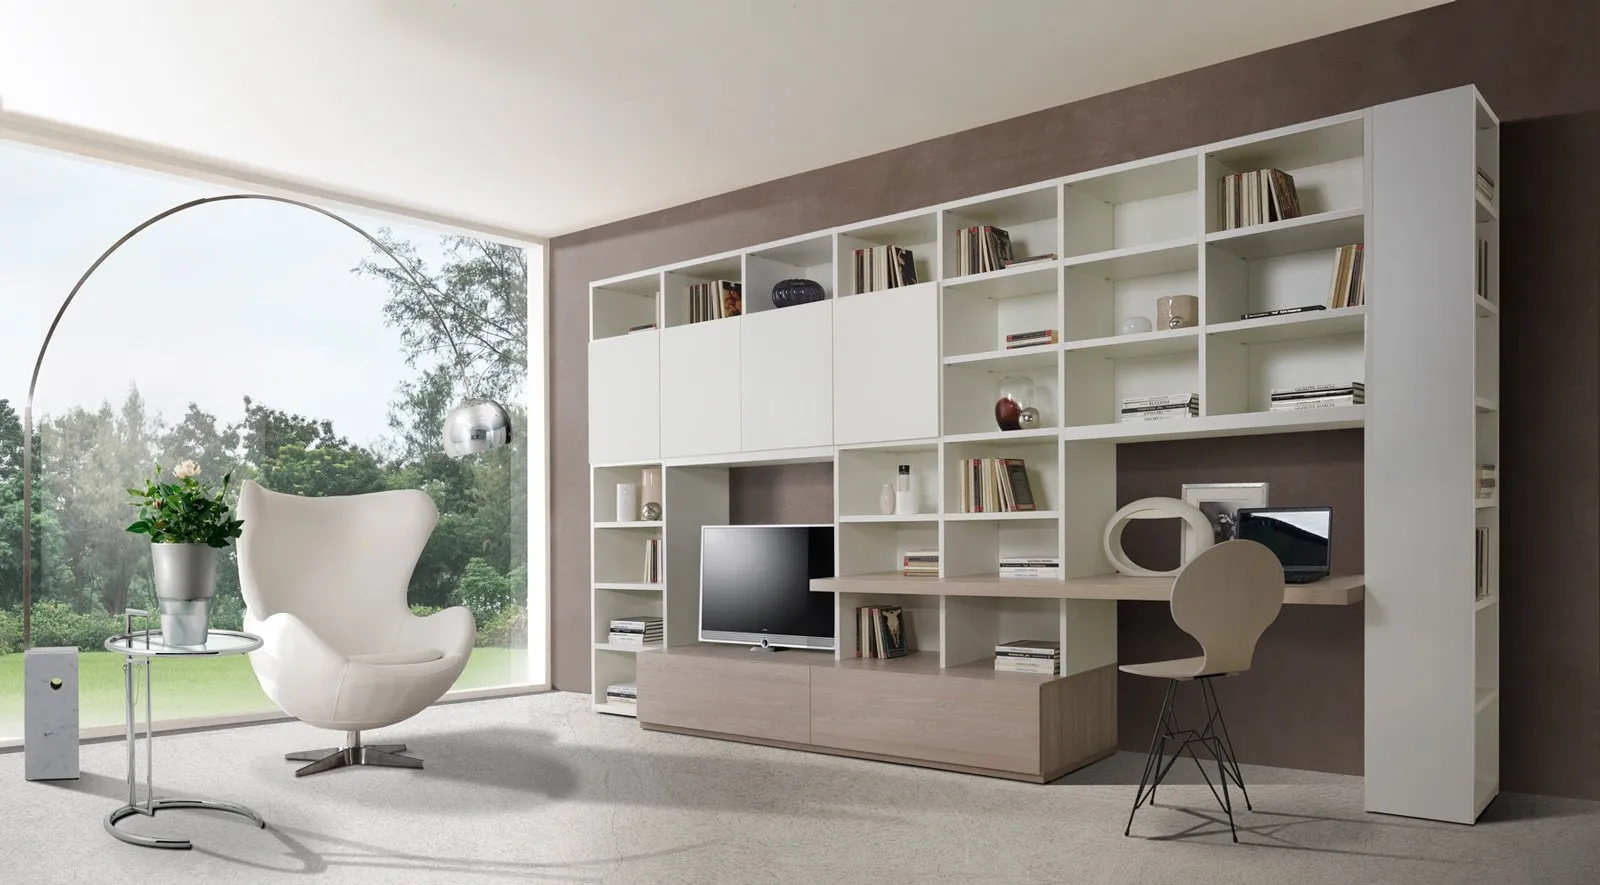 Mobili salotto moderni come arredare il living mobili for Arredamento salotto